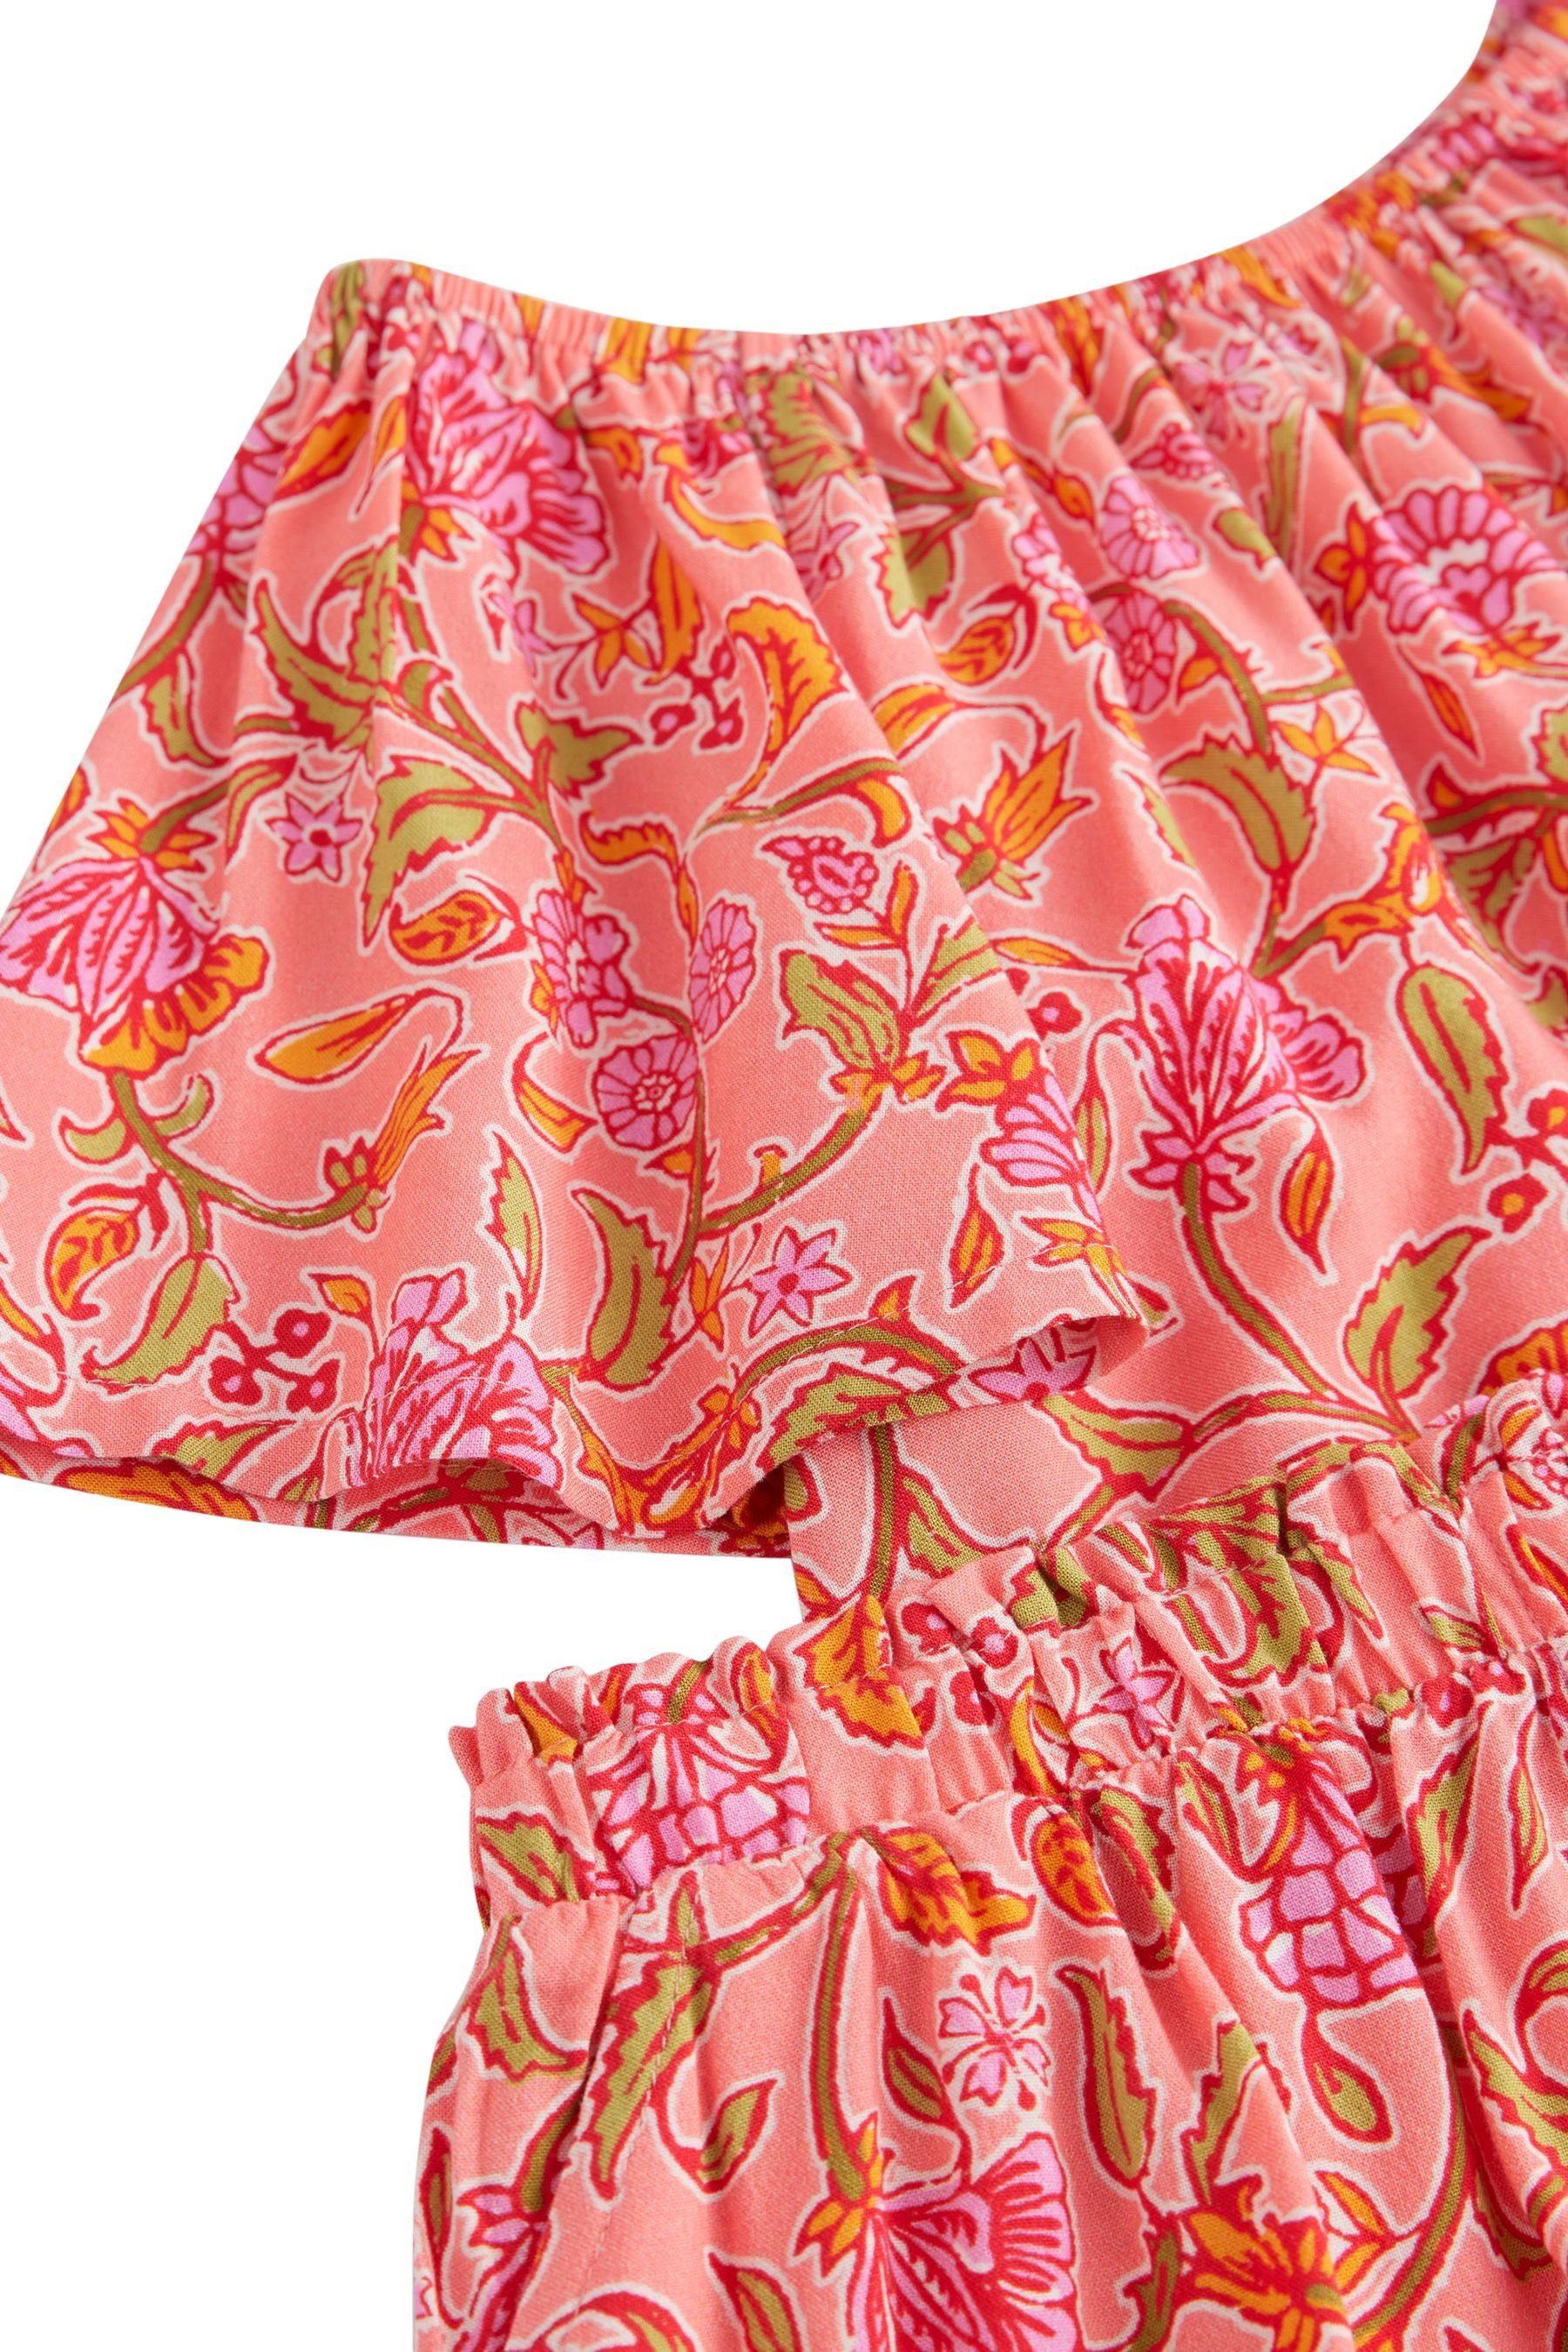 Next Shirt & Shorts Co-Ord-Set, aus bestehend Pink/Orange Shorts Oberteil (2-tlg) und